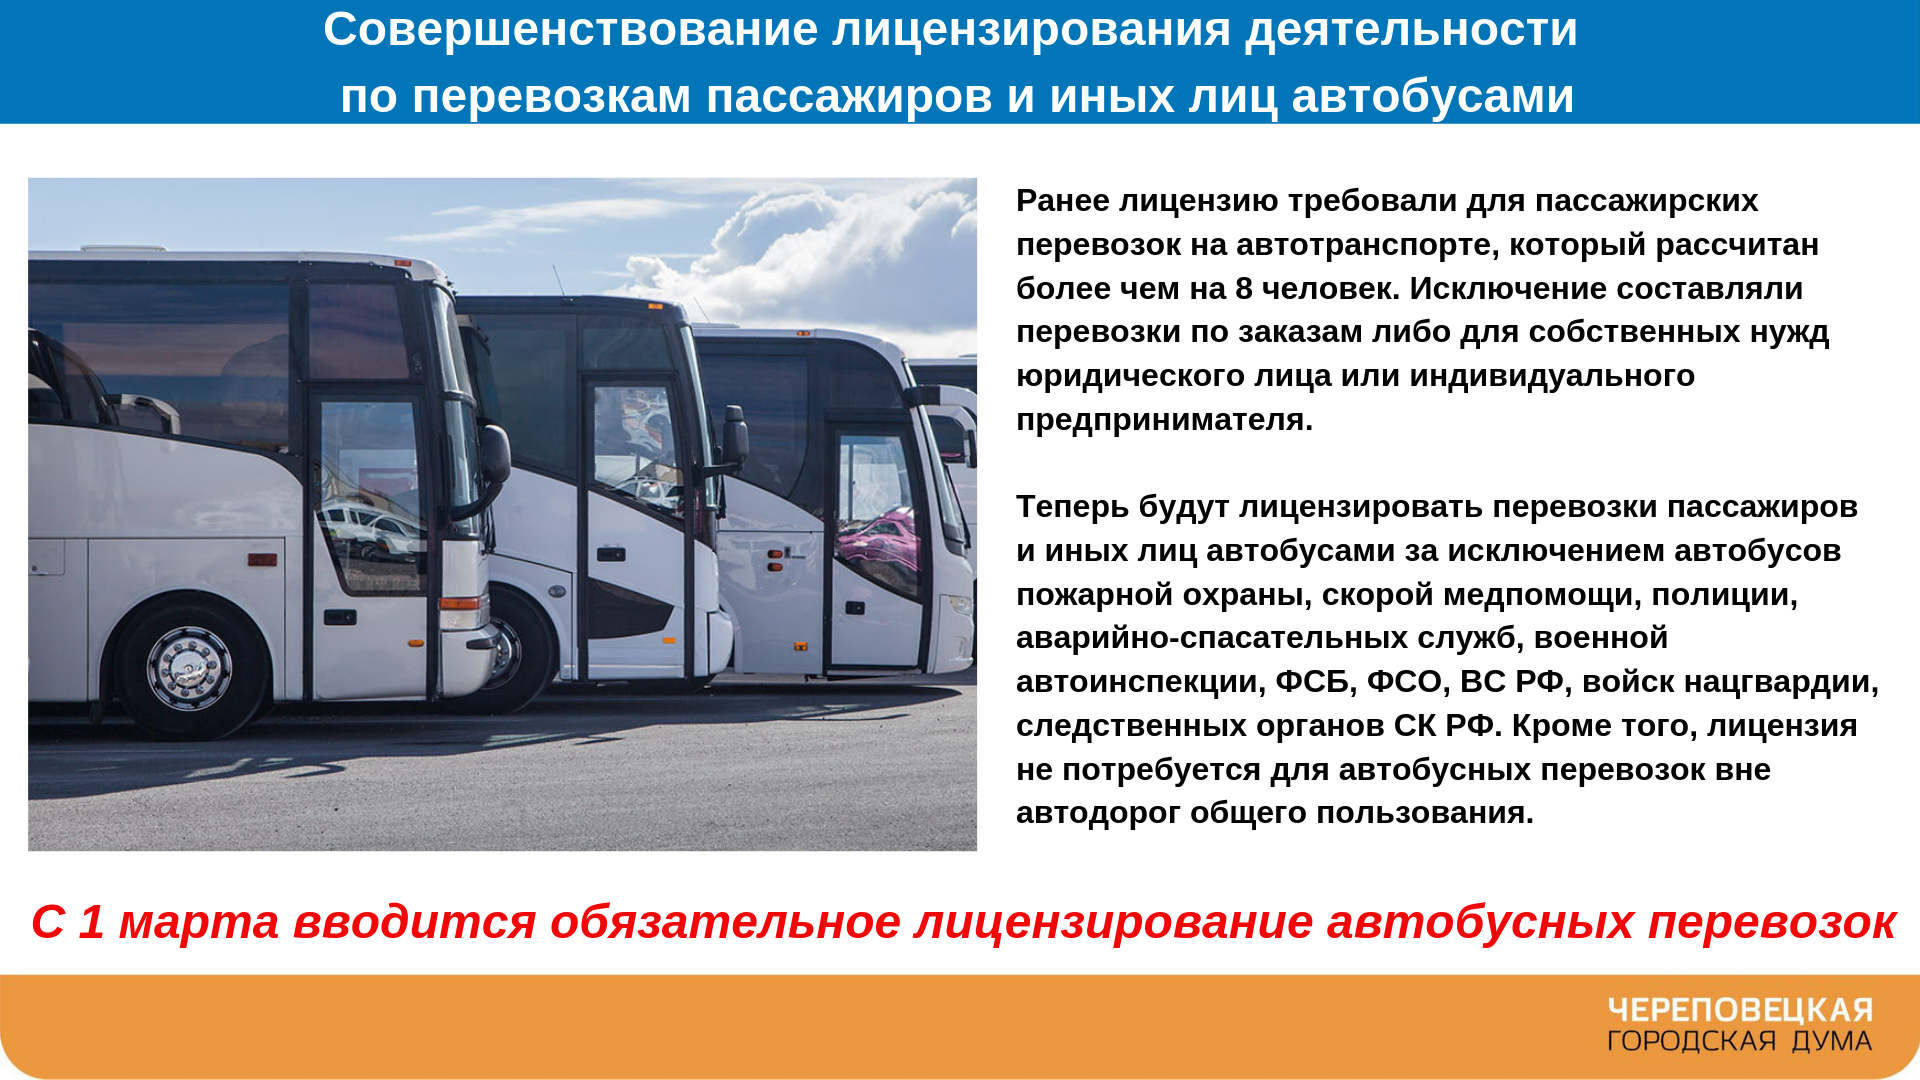 Перевозка пассажиров. Требования к пассажирским перевозкам. Пассажирские автобусные перевозки. Организация автобусных перевозок.